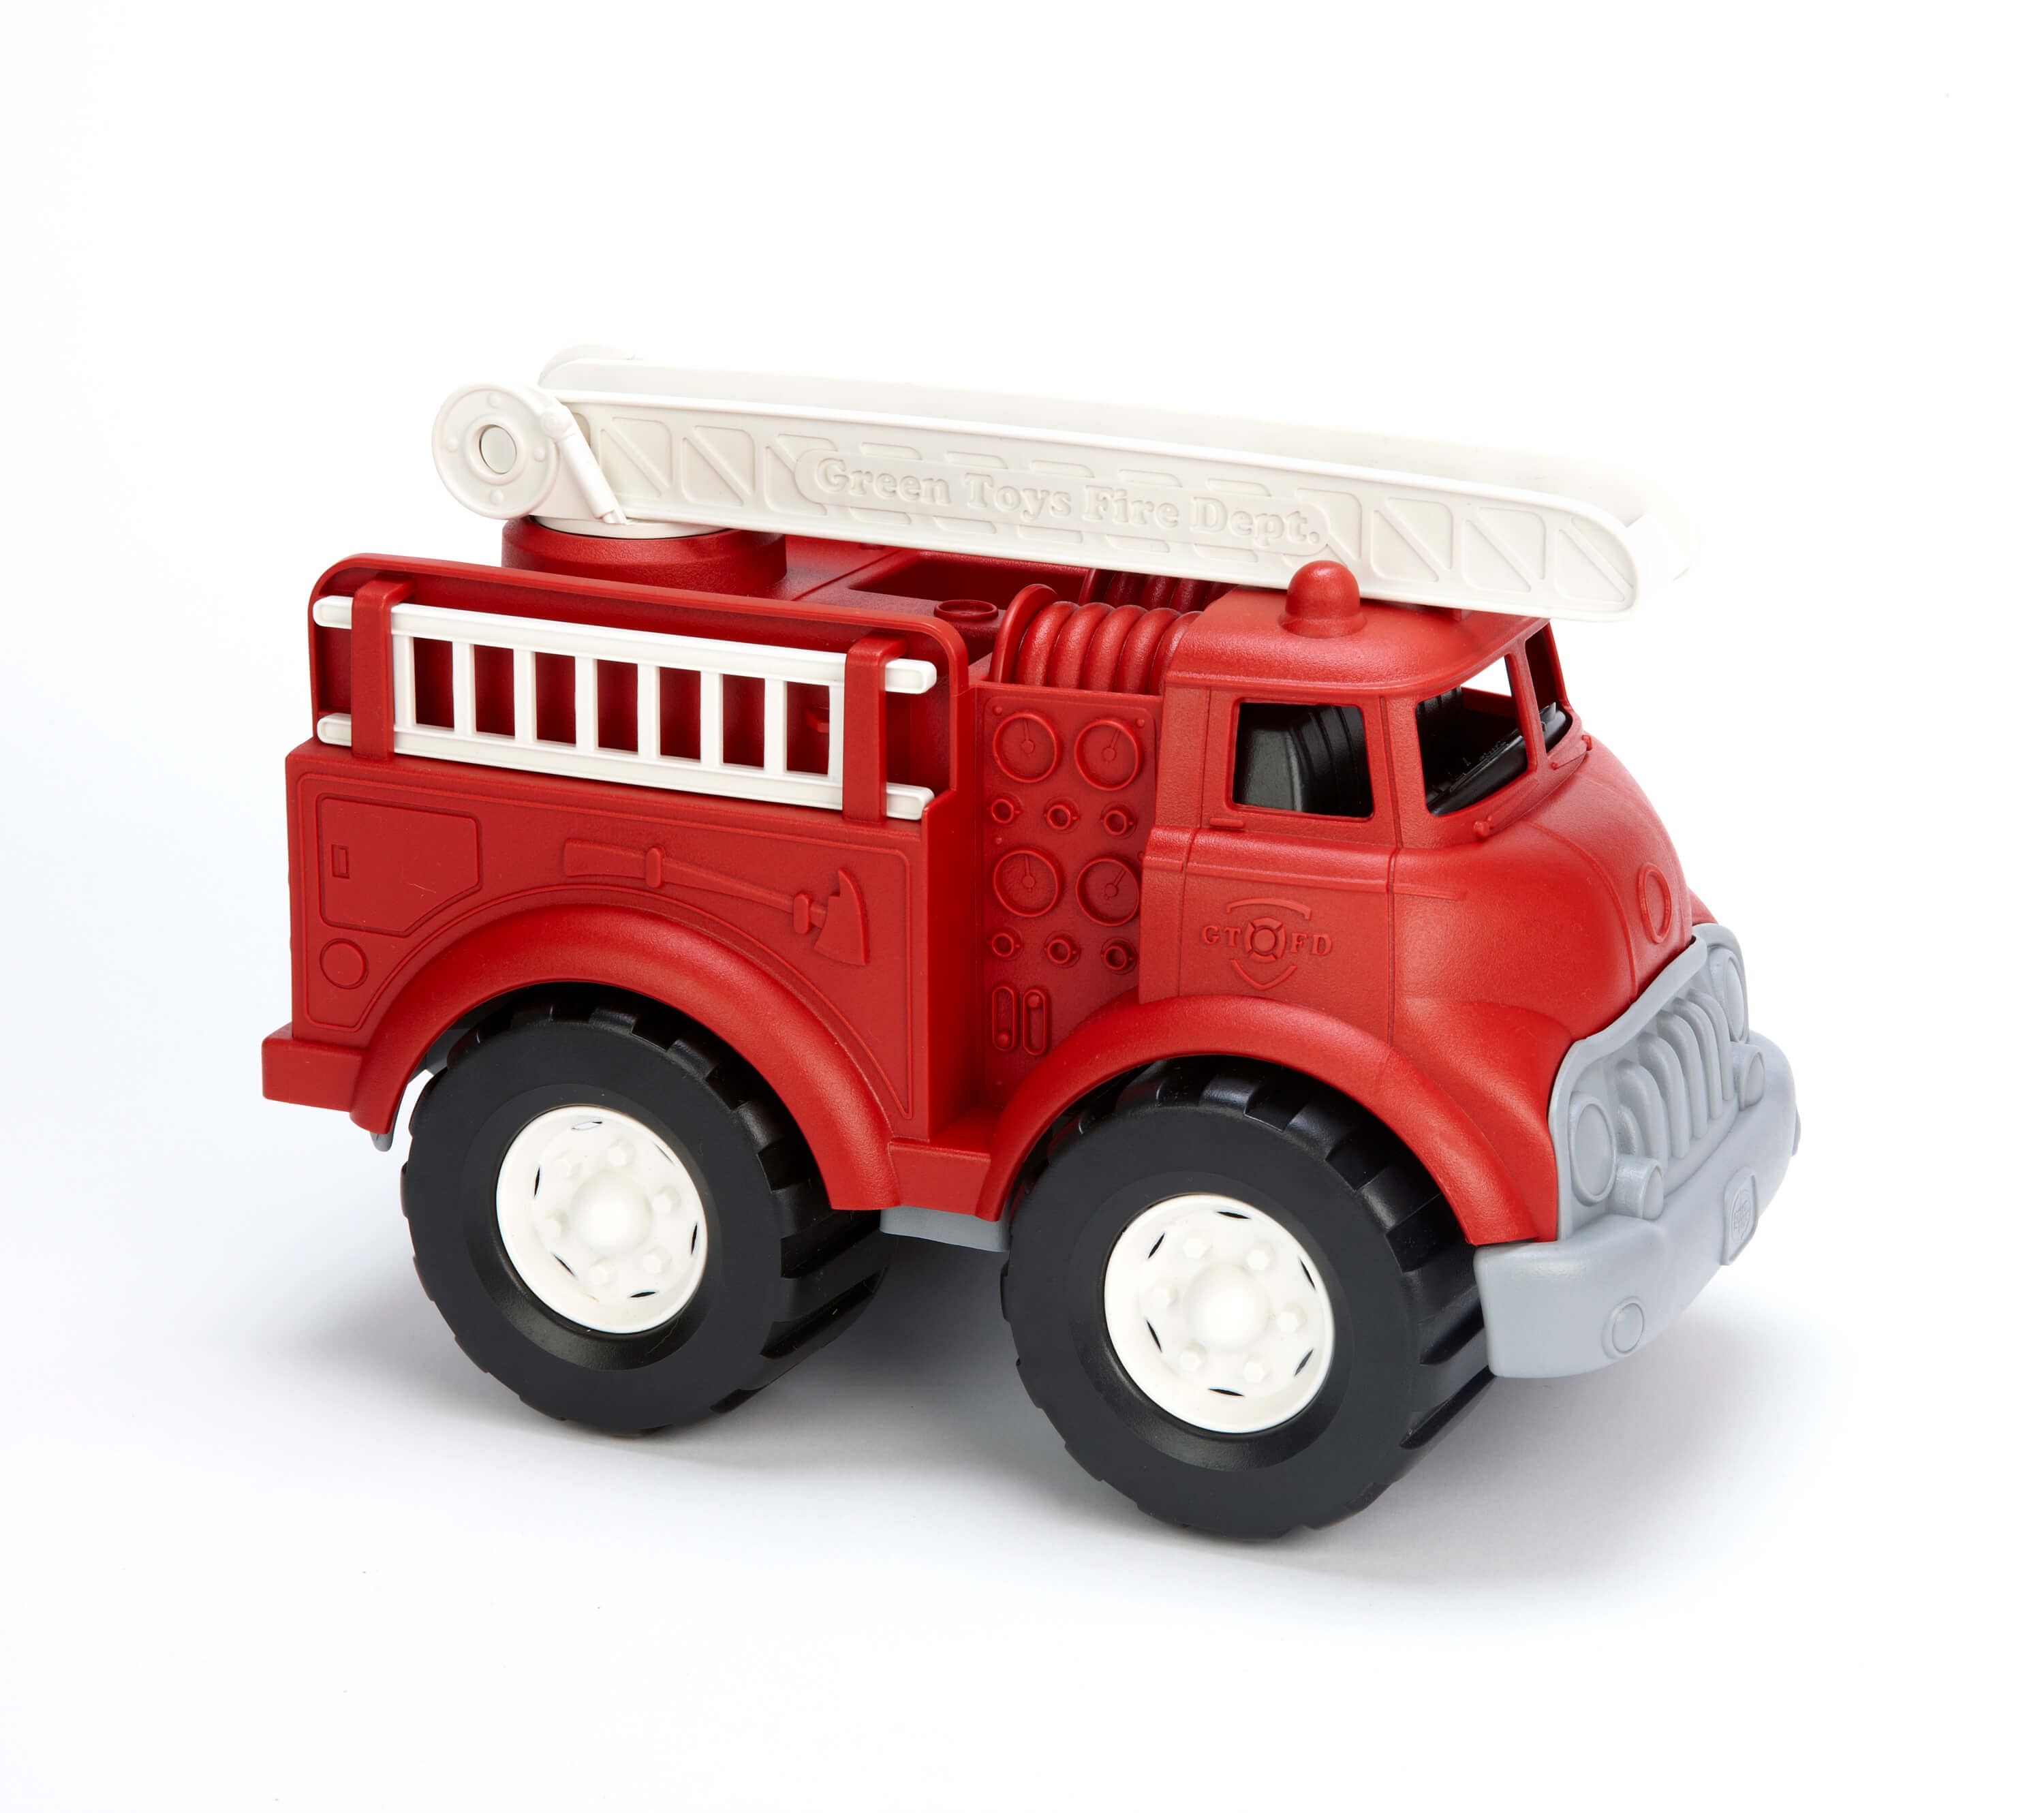 Green Toys Fire Truck    